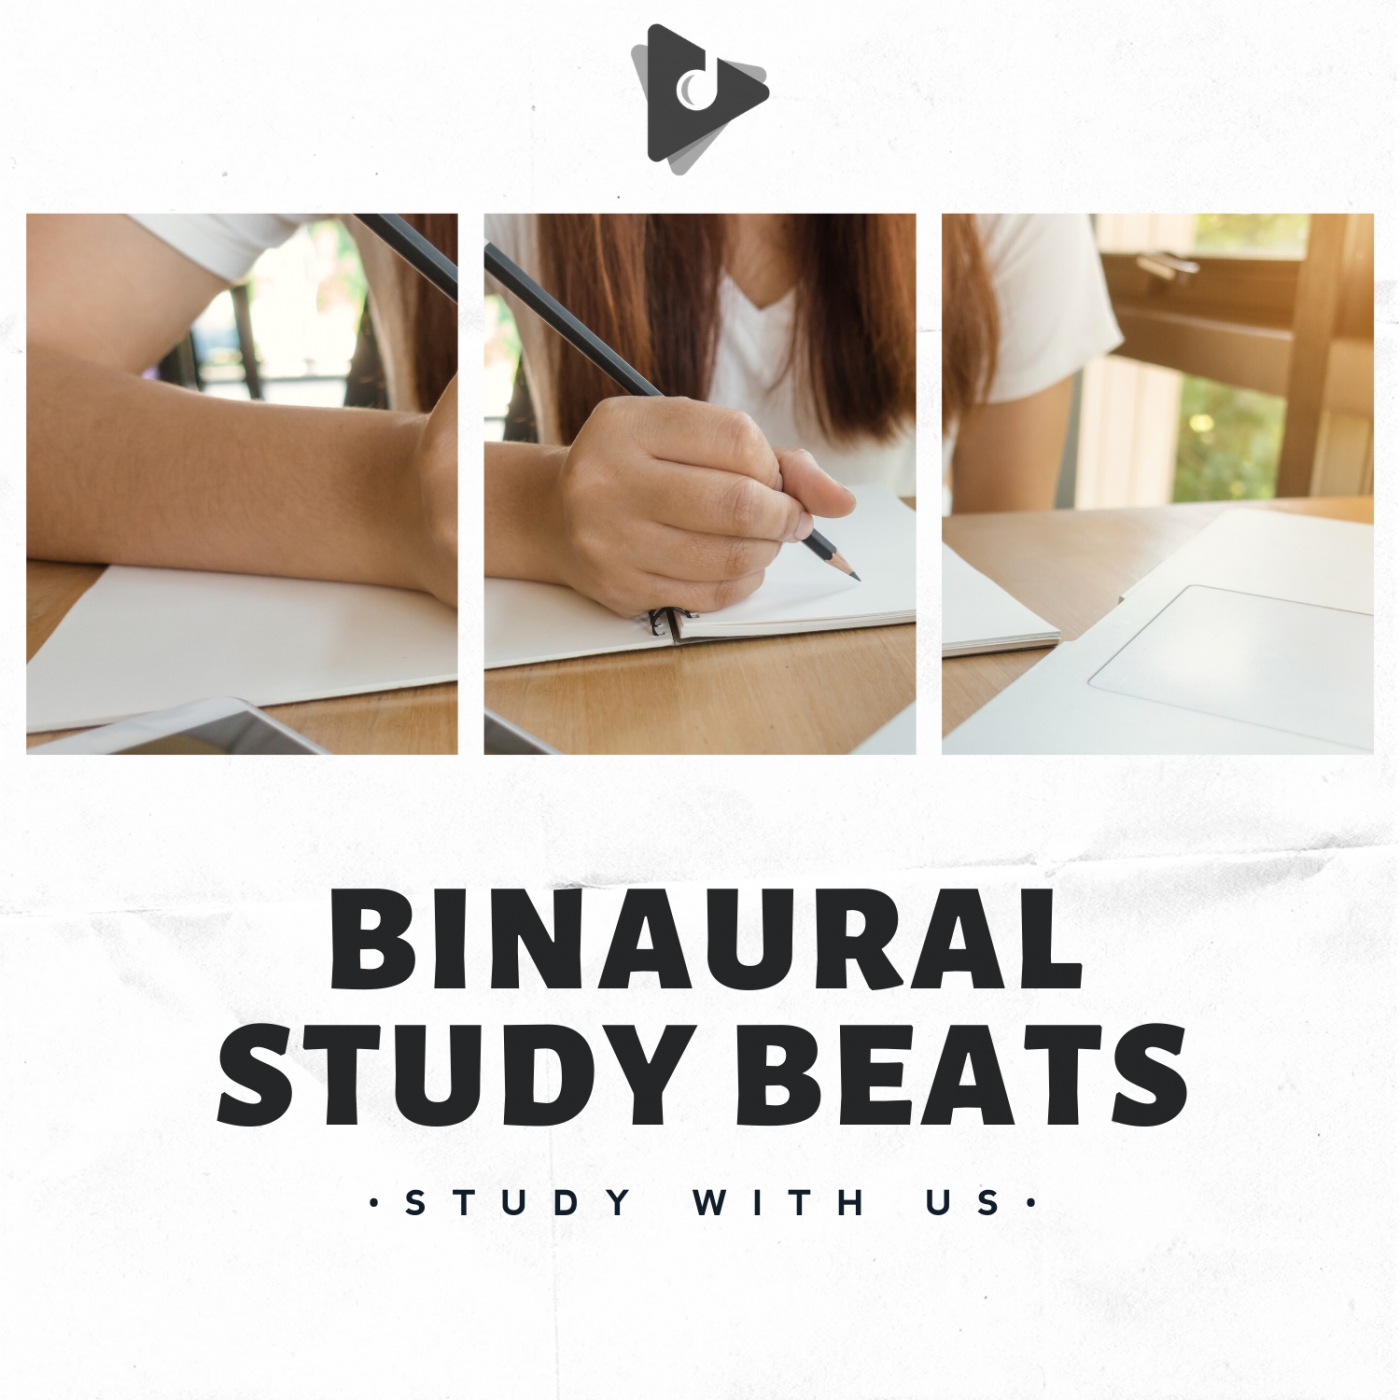 Binaural Study Beats